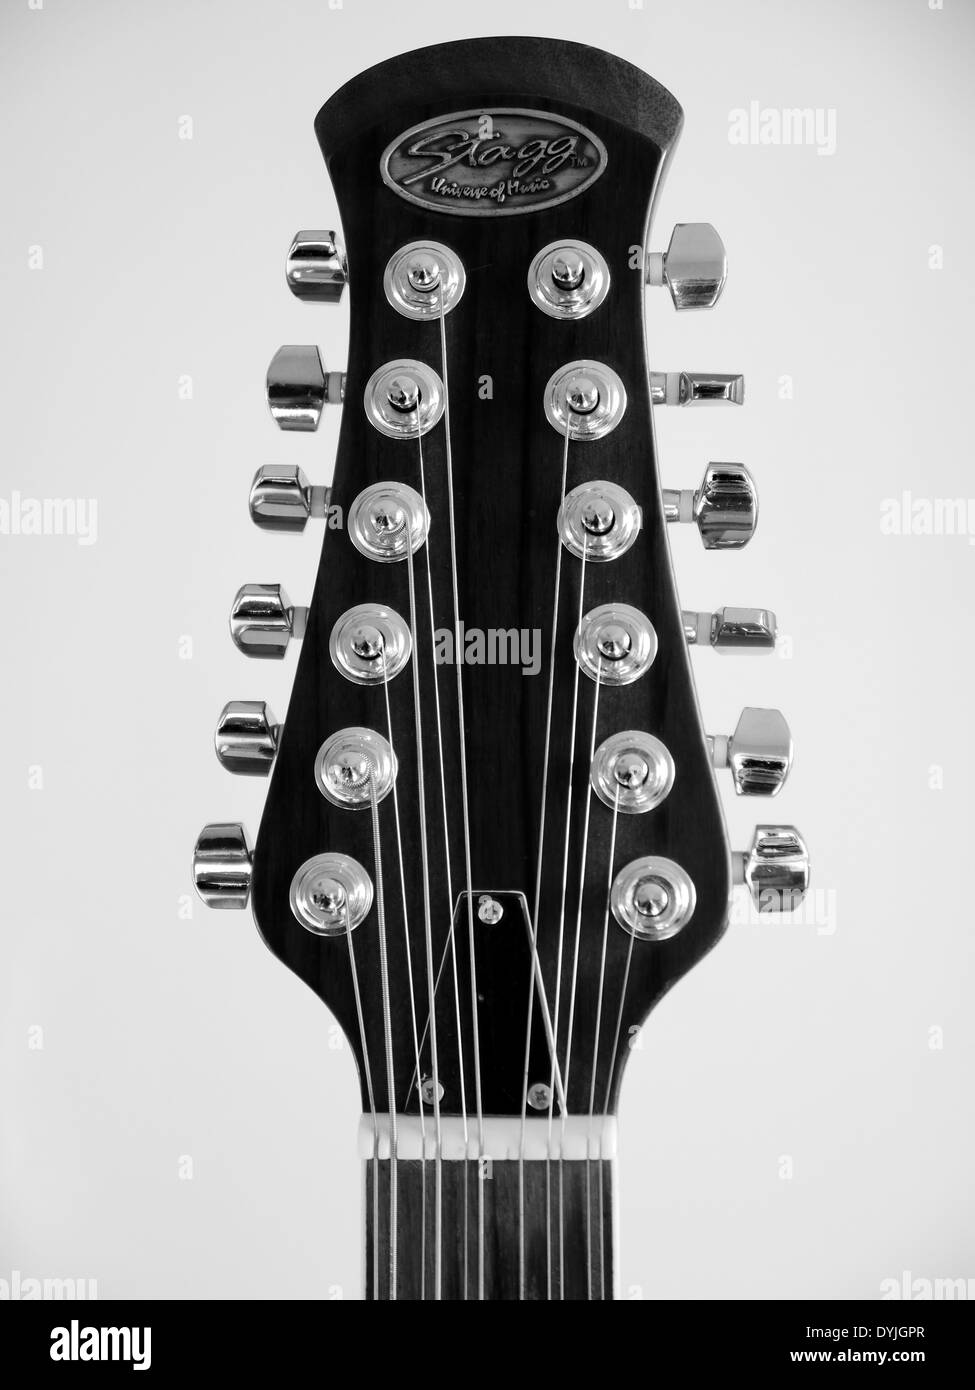 Stagg Guitare Noir | freixenet.com